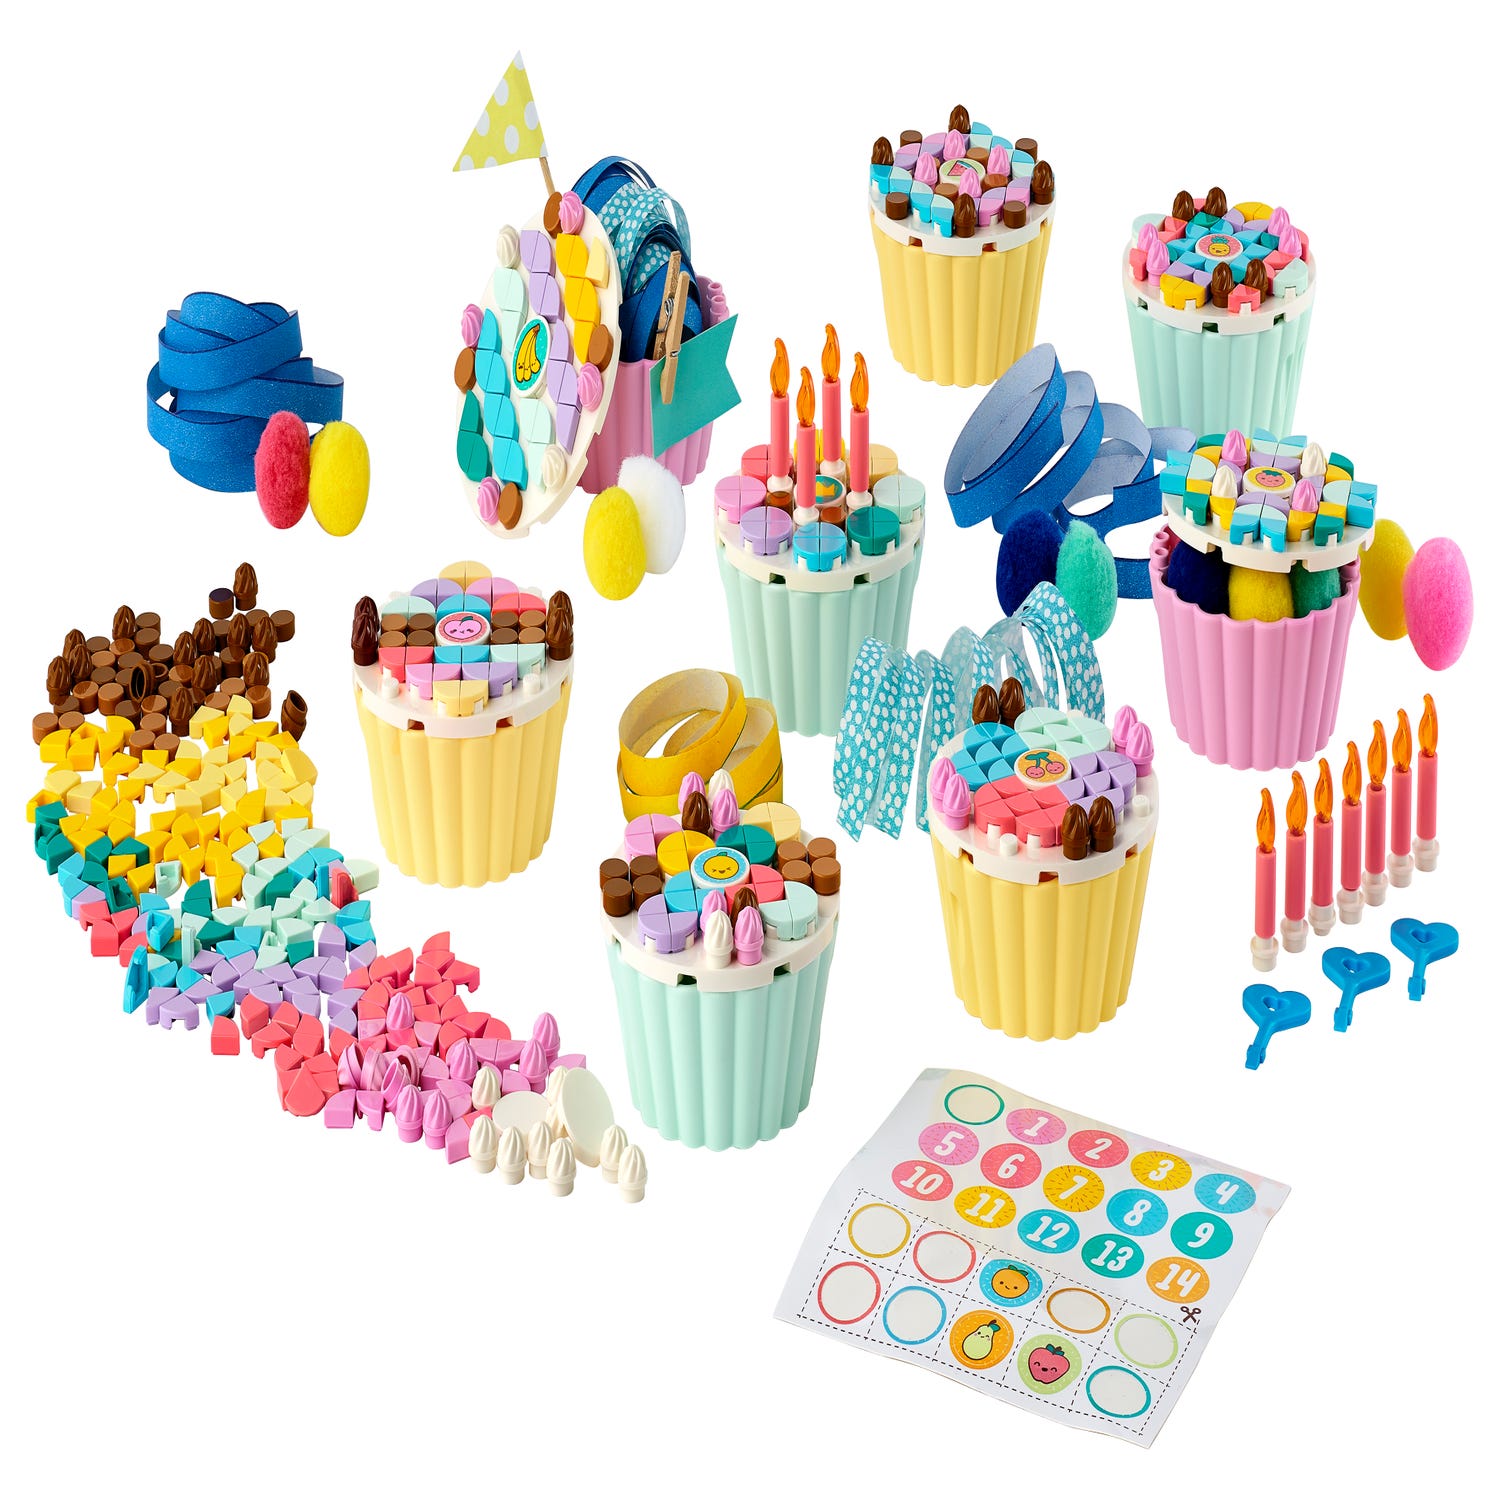 cupcake lego party